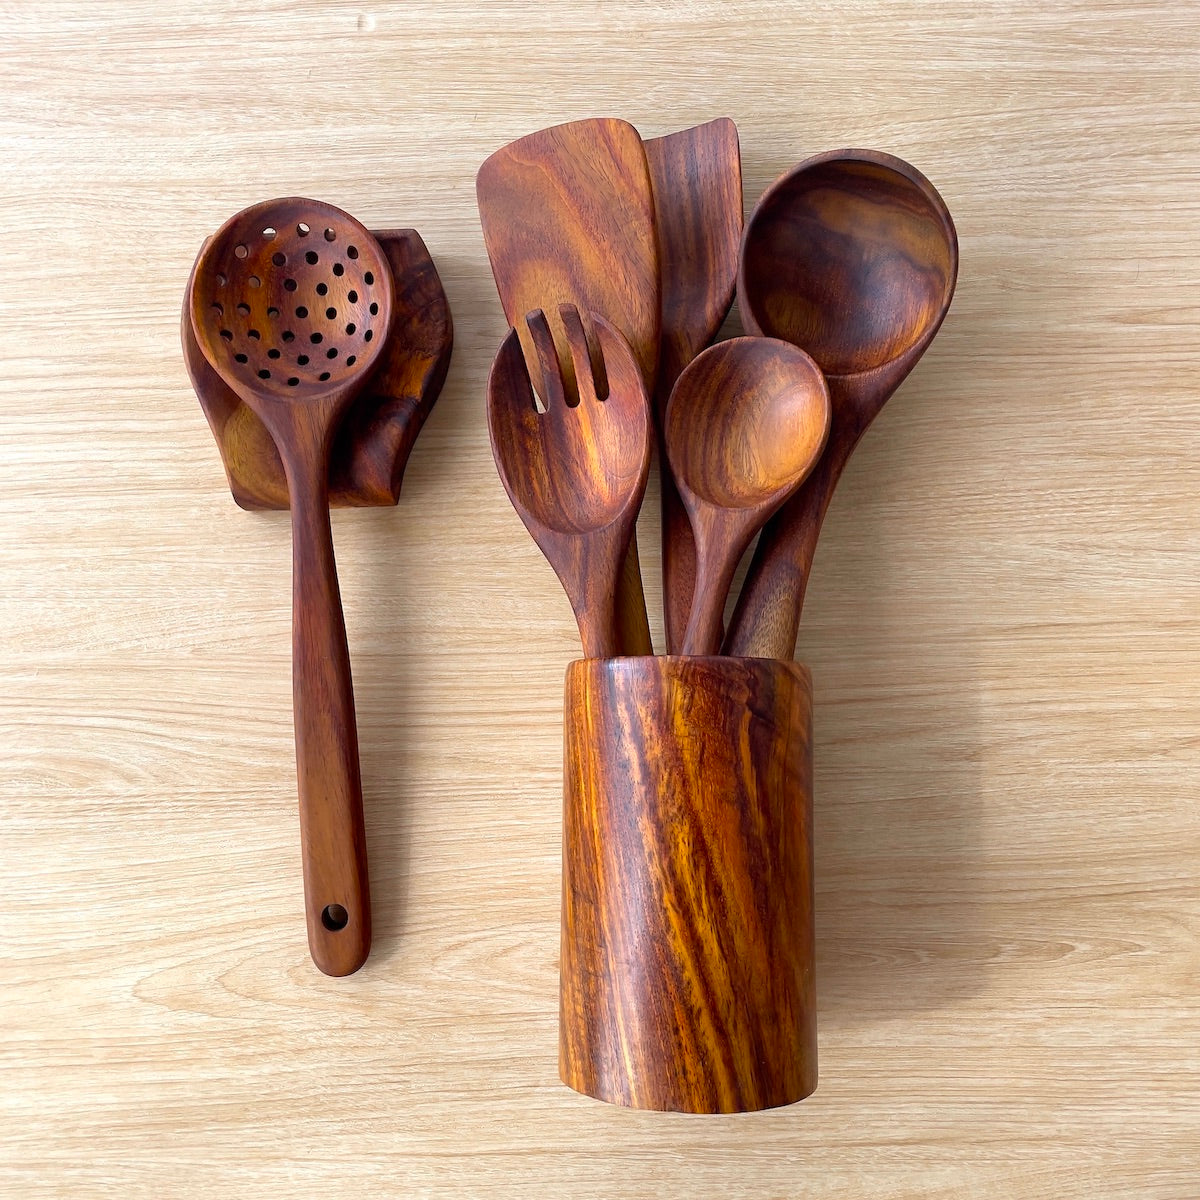 Wooden Cooking Utensils, Kitchen Utensils Set with Holder & Spoon Rest 8 Pieces